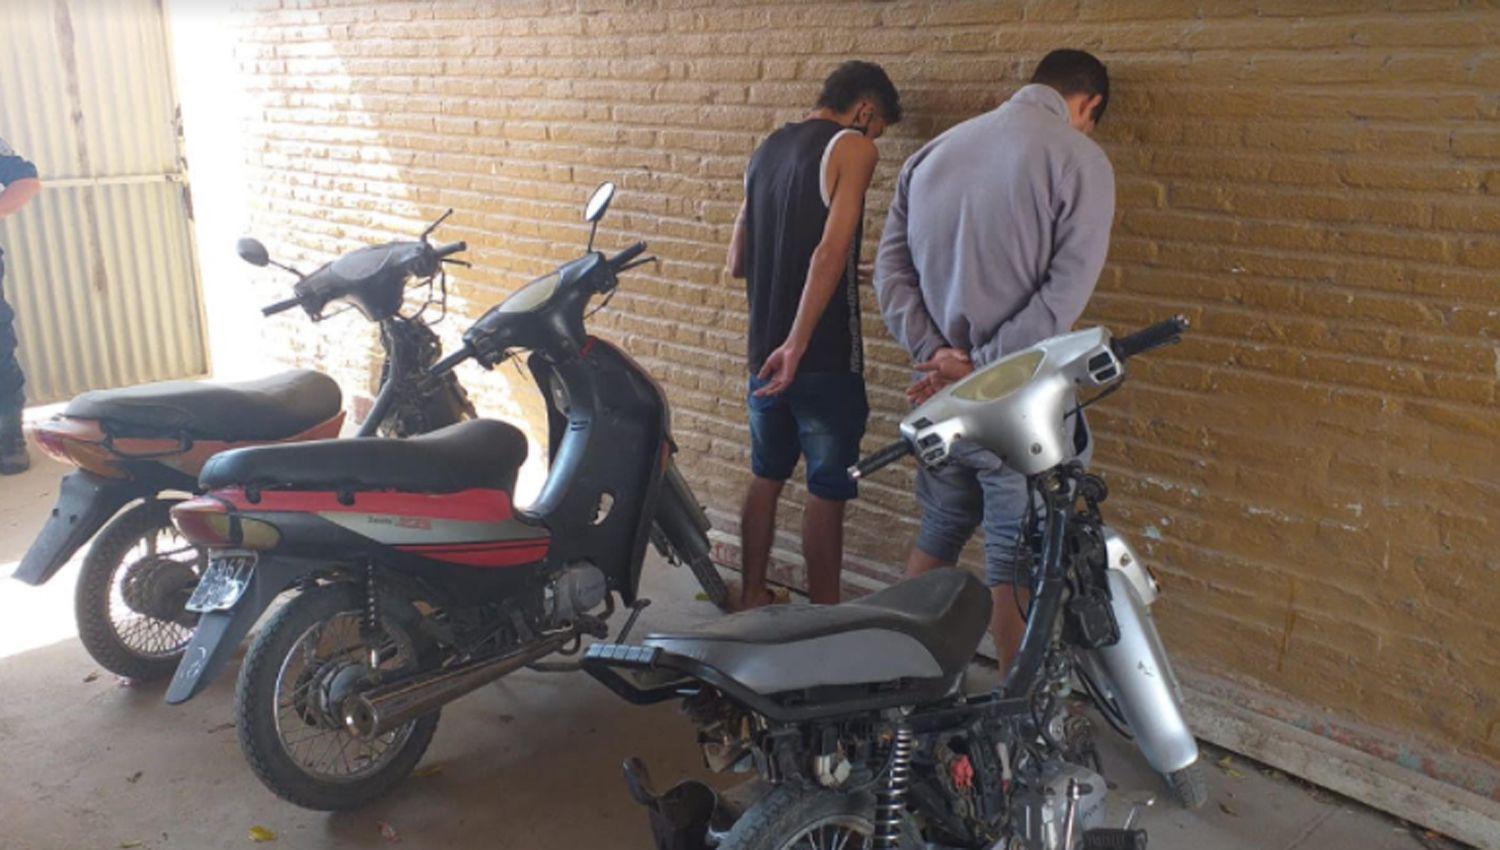 Clodomira- recupero de motos robadas tras allanamientos y detenciones